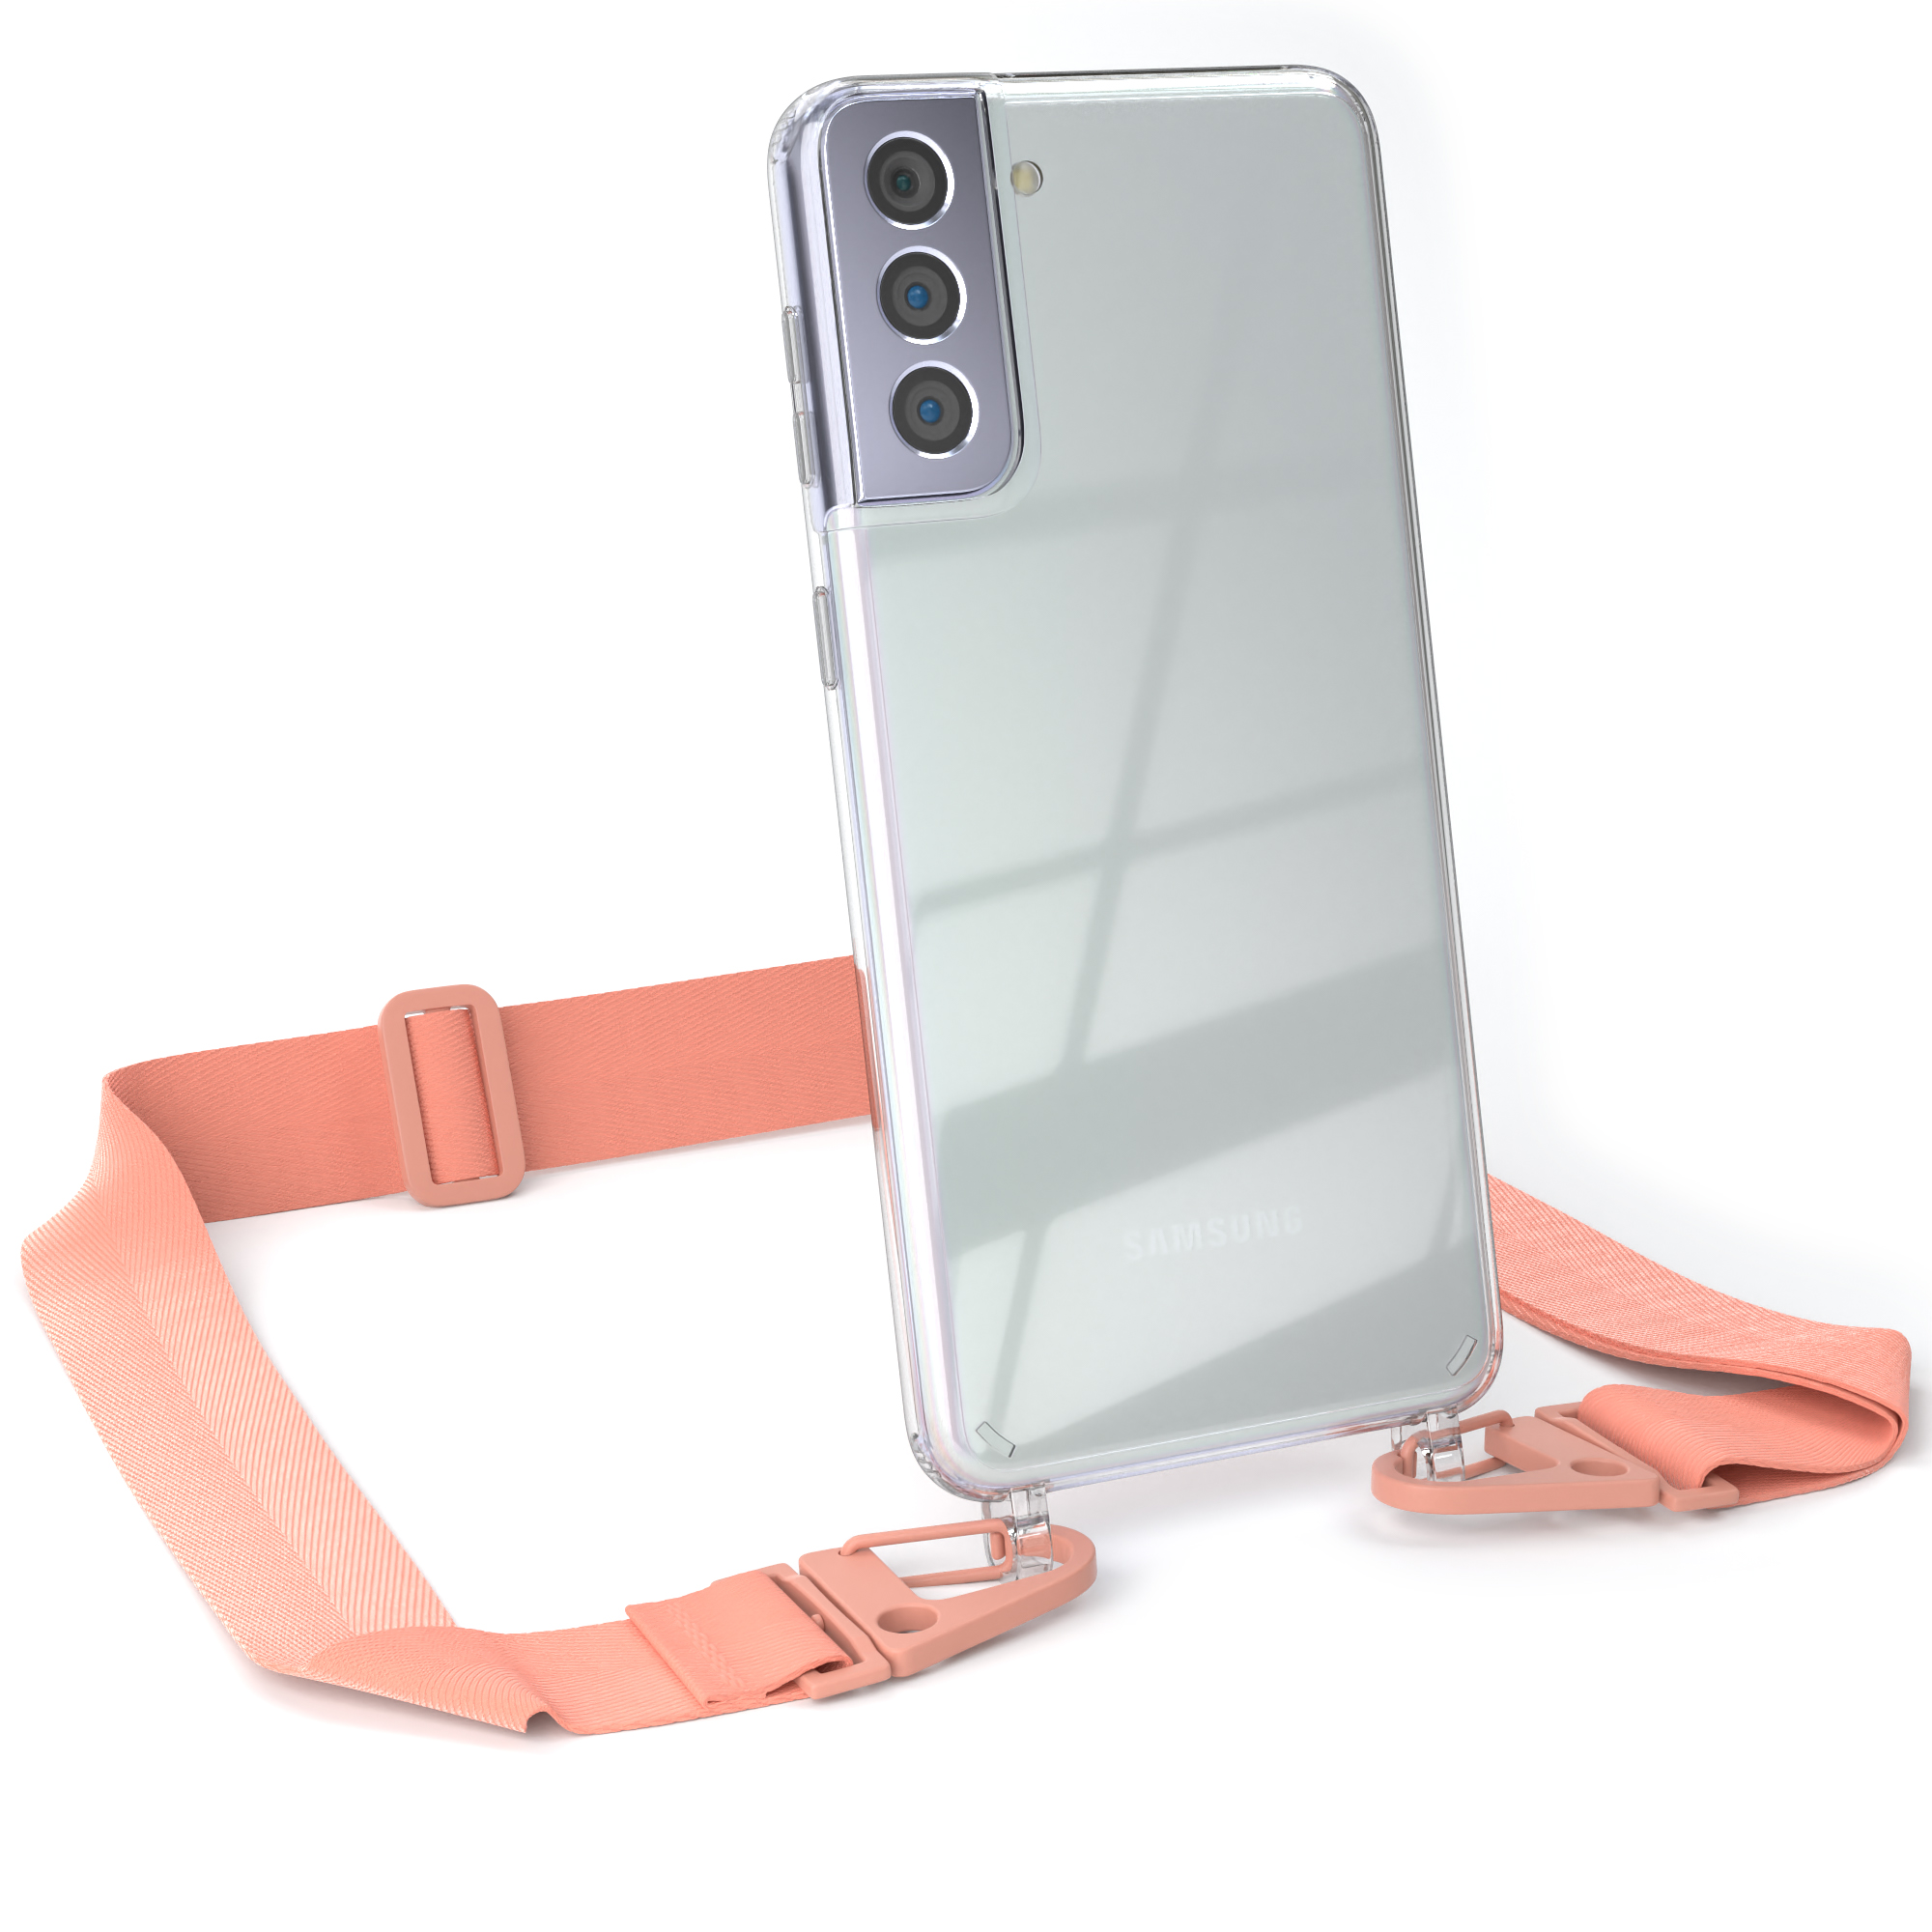 EAZY CASE Transparente Handyhülle Samsung, Coral Plus breiter mit S21 Umhängetasche, Altrosa Kordel Karabiner, + Galaxy / 5G